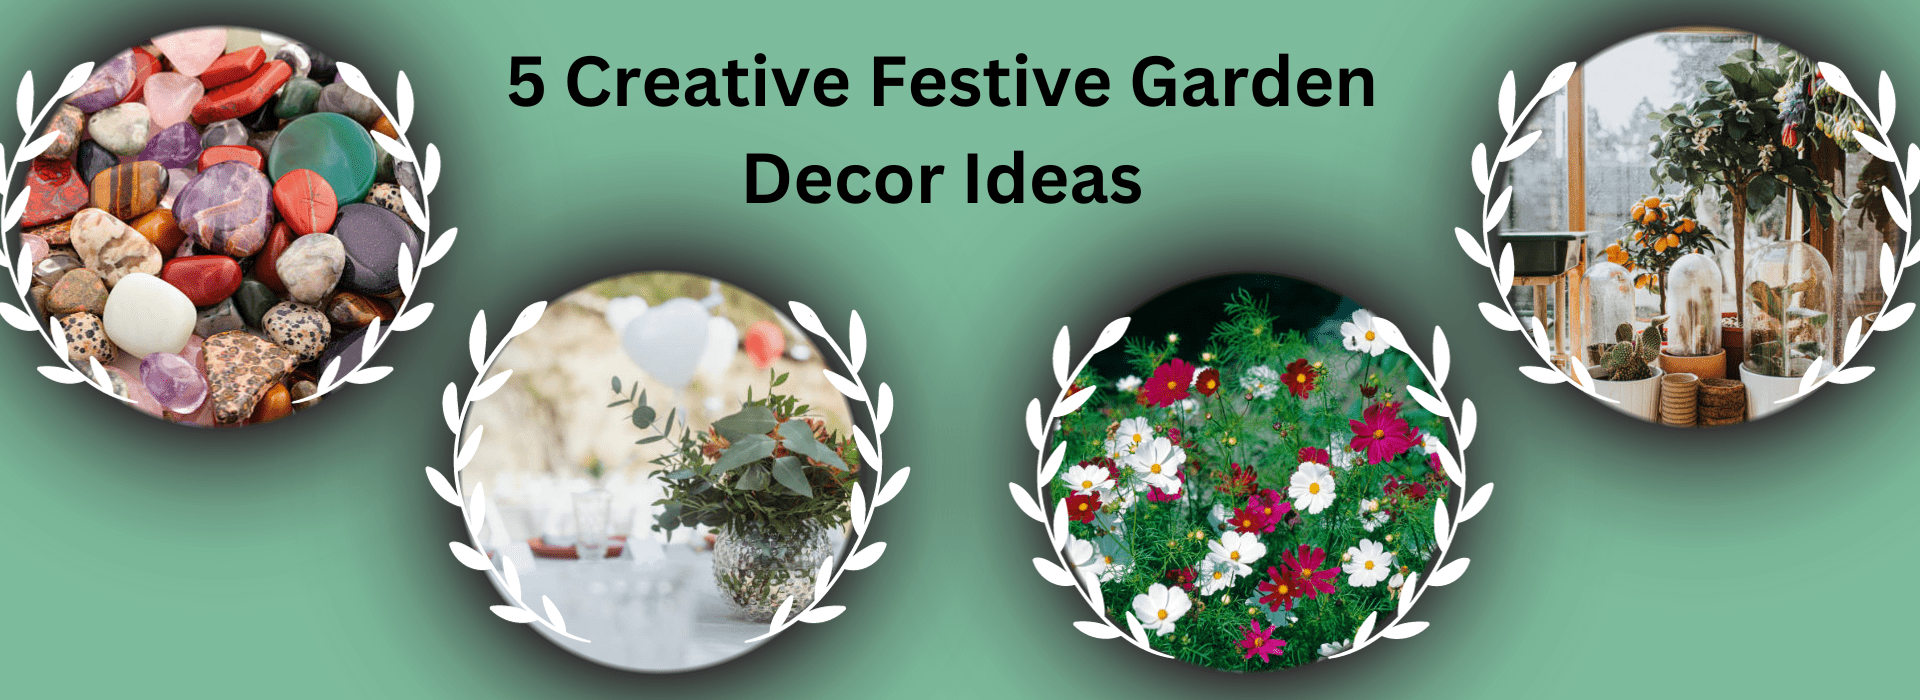 5 Creative Festive Garden Decor Ideas